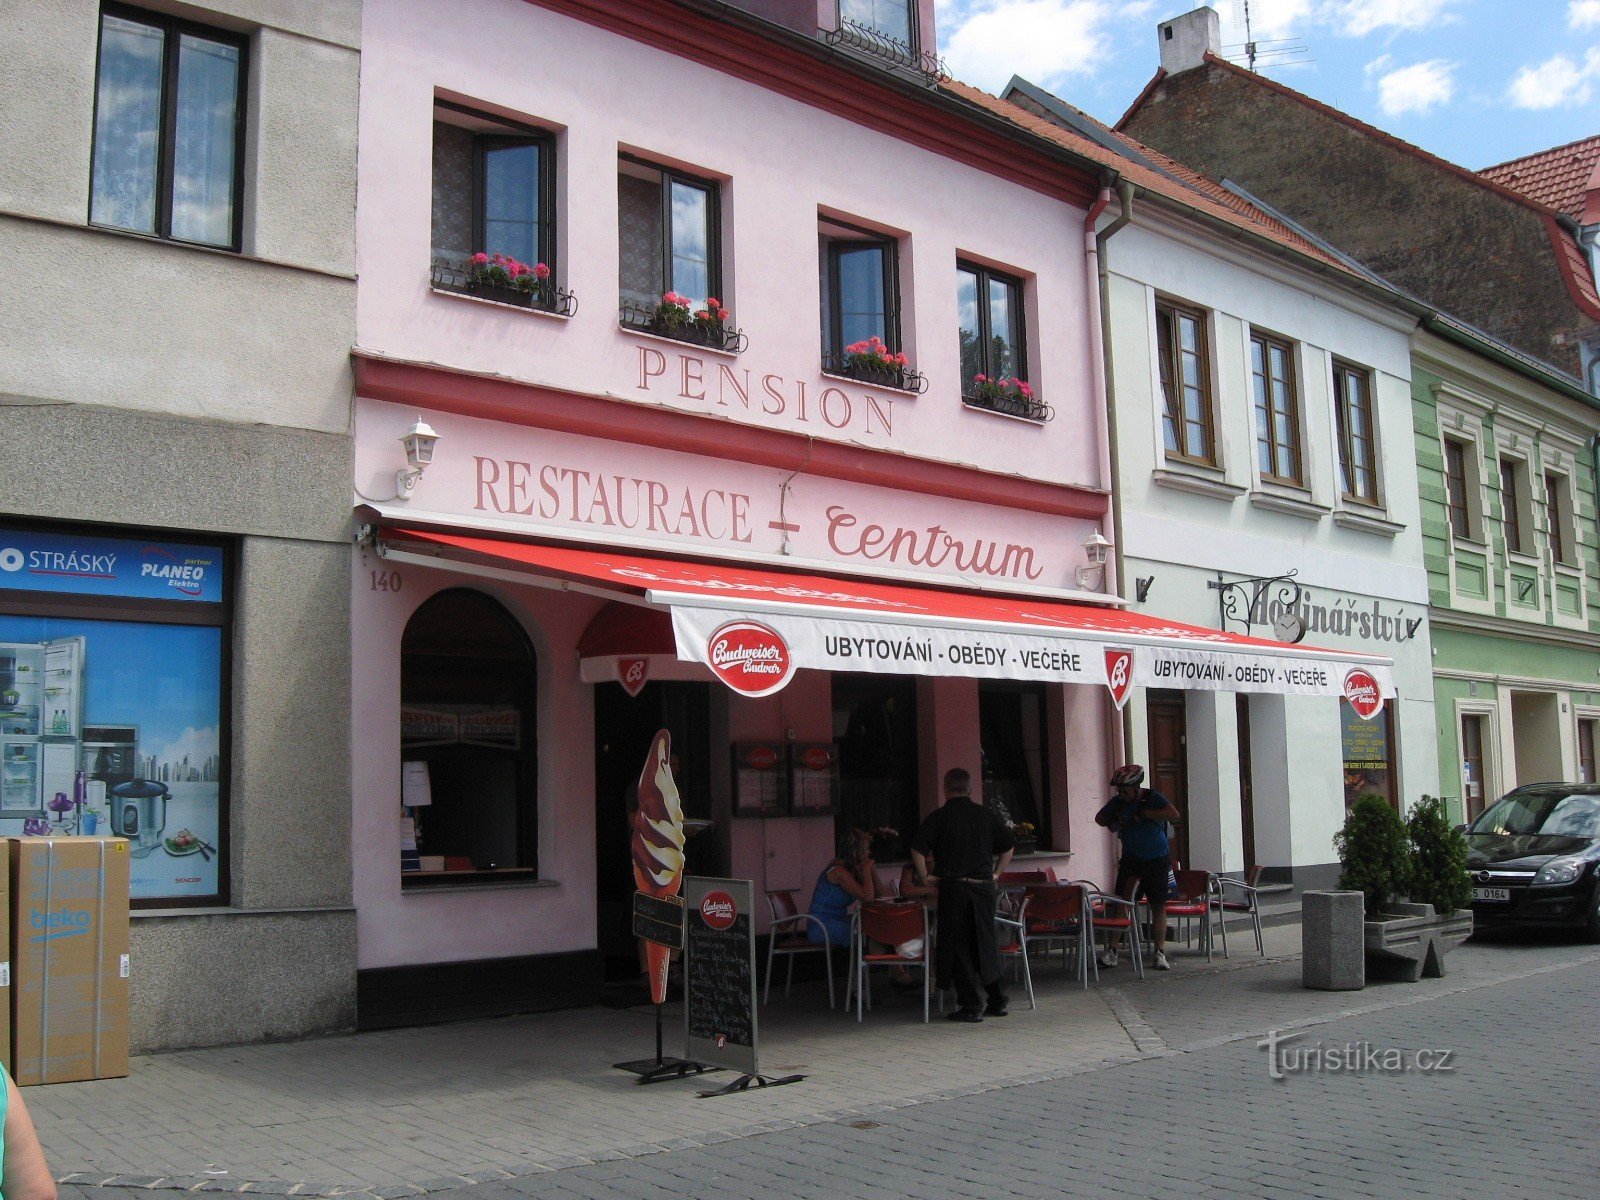 Trhové Sviny - restaurant and boarding house